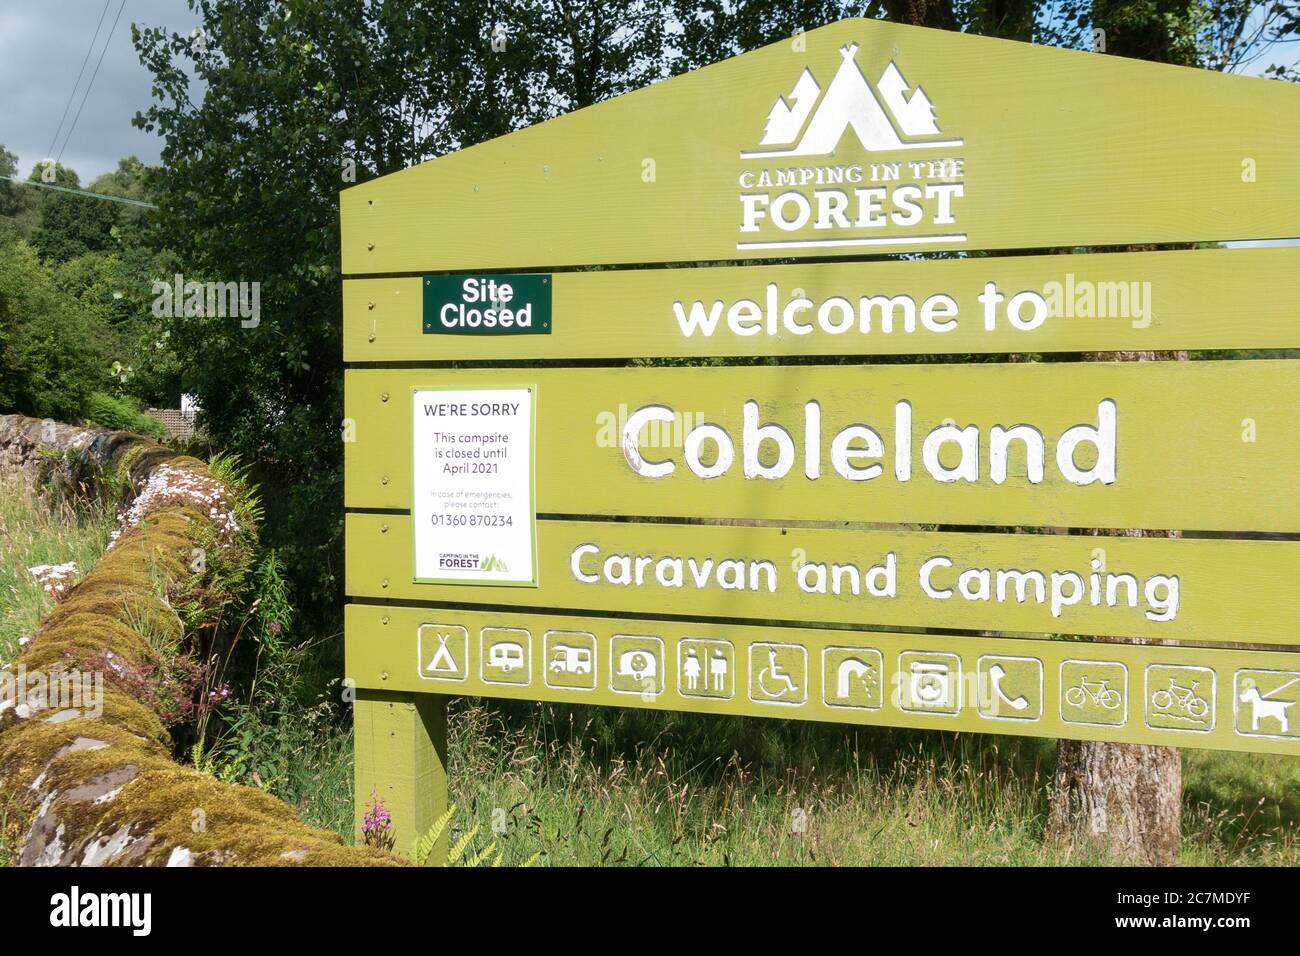 Camping Cobleland, Trossachs Camping dans la forêt - fermé jusqu'en avril 2021 en raison du signe de pandémie du coronavirus - Écosse, Royaume-Uni Banque D'Images